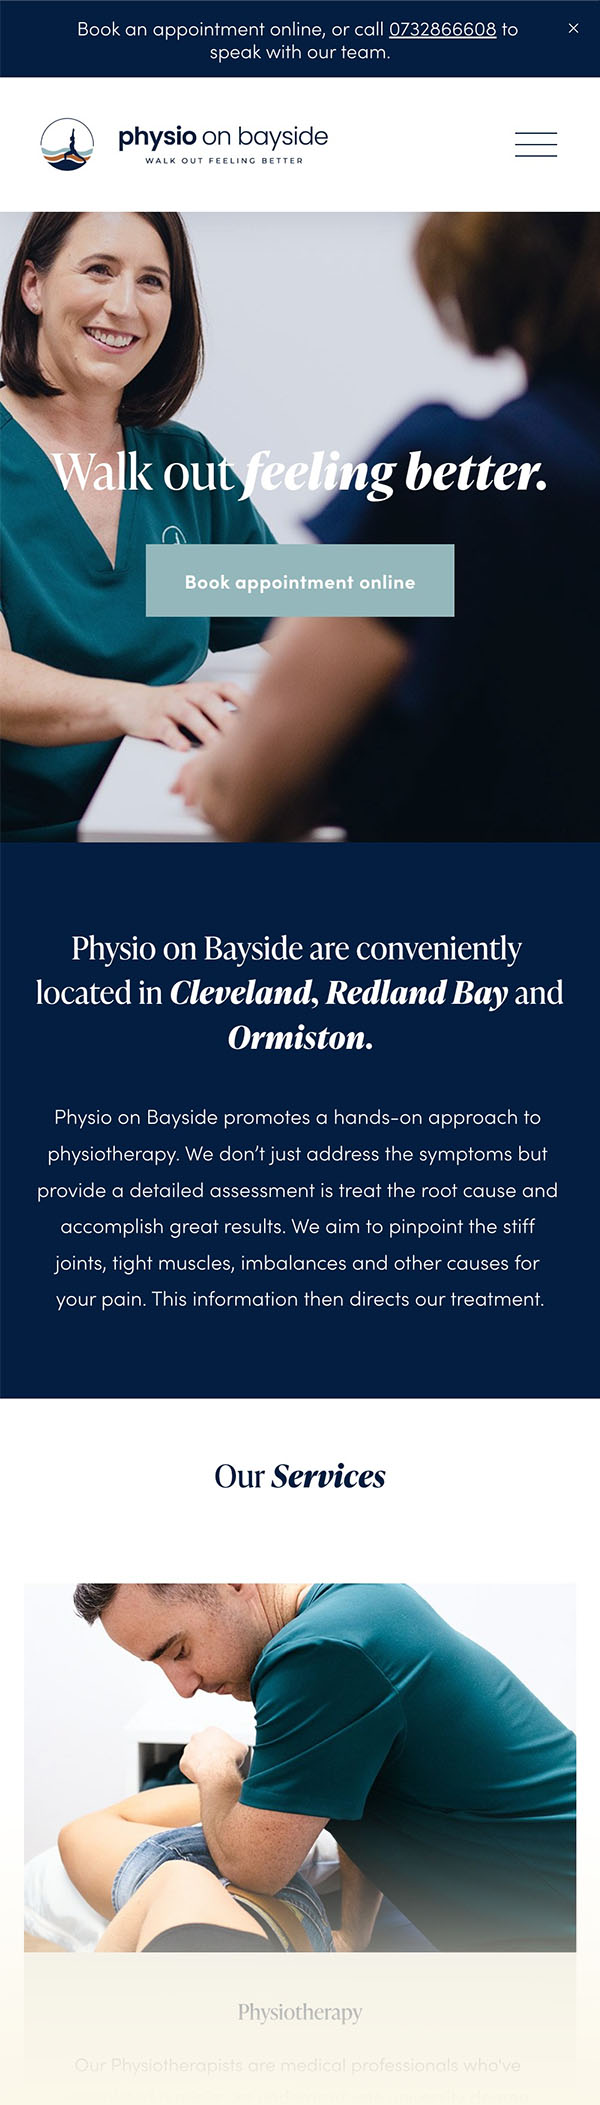 Physio on Bayside by Emma Hackett Design